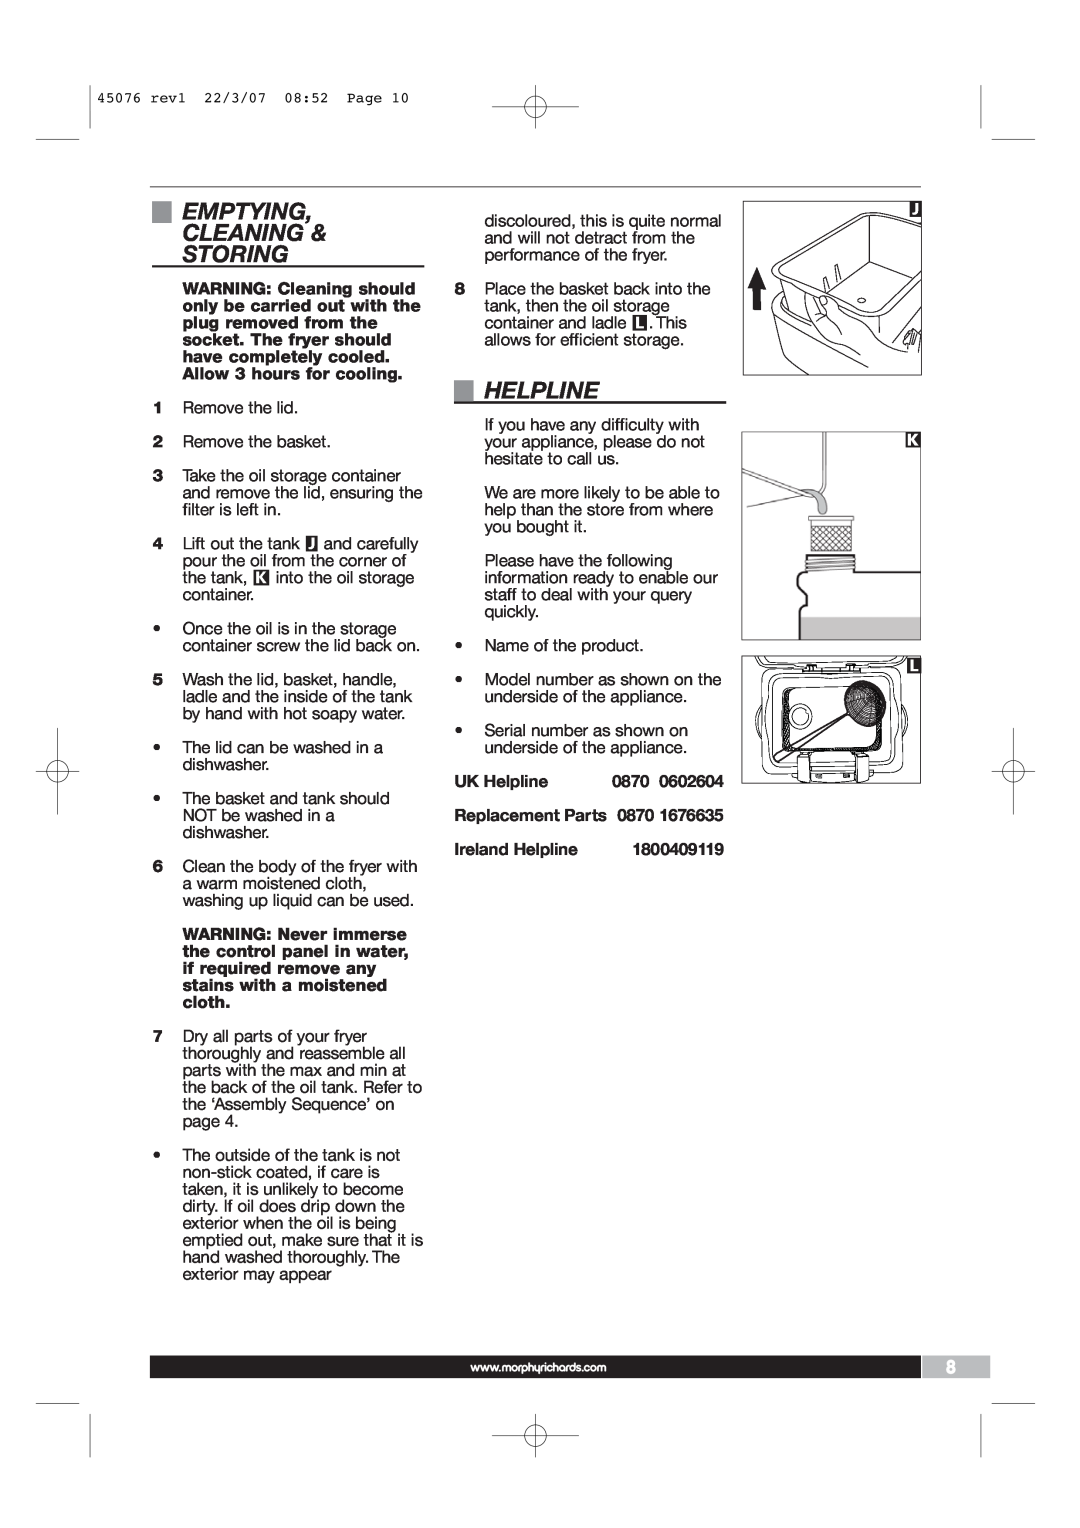 Morphy Richards Coffeemaker manual Emptying Cleaning & Storing, UK Helpline, 0870, Replacement Parts, Ireland Helpline 